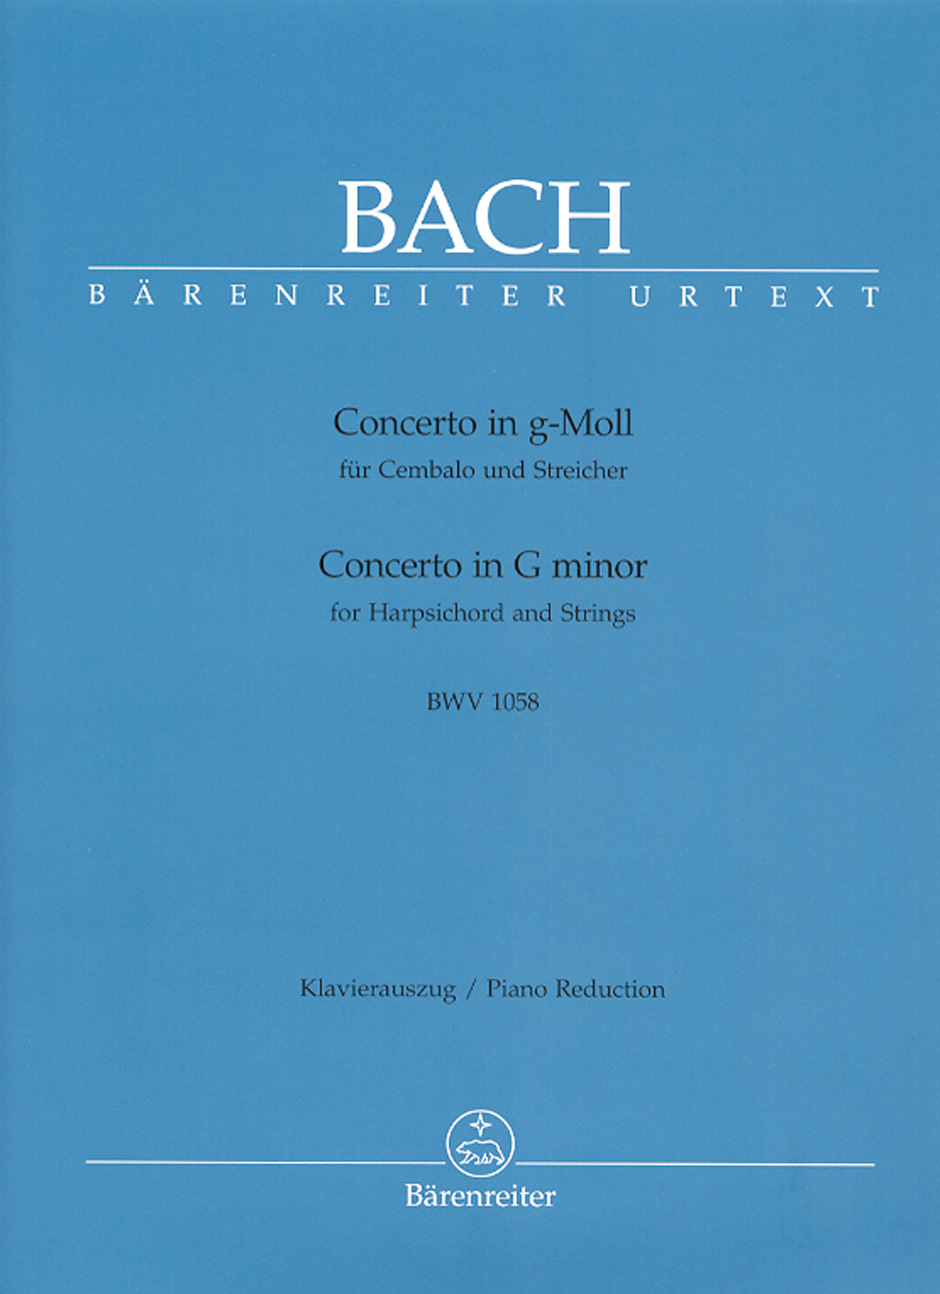 Concerto Für Cembalo Und Streicher (BACH JOHANN SEBASTIAN)